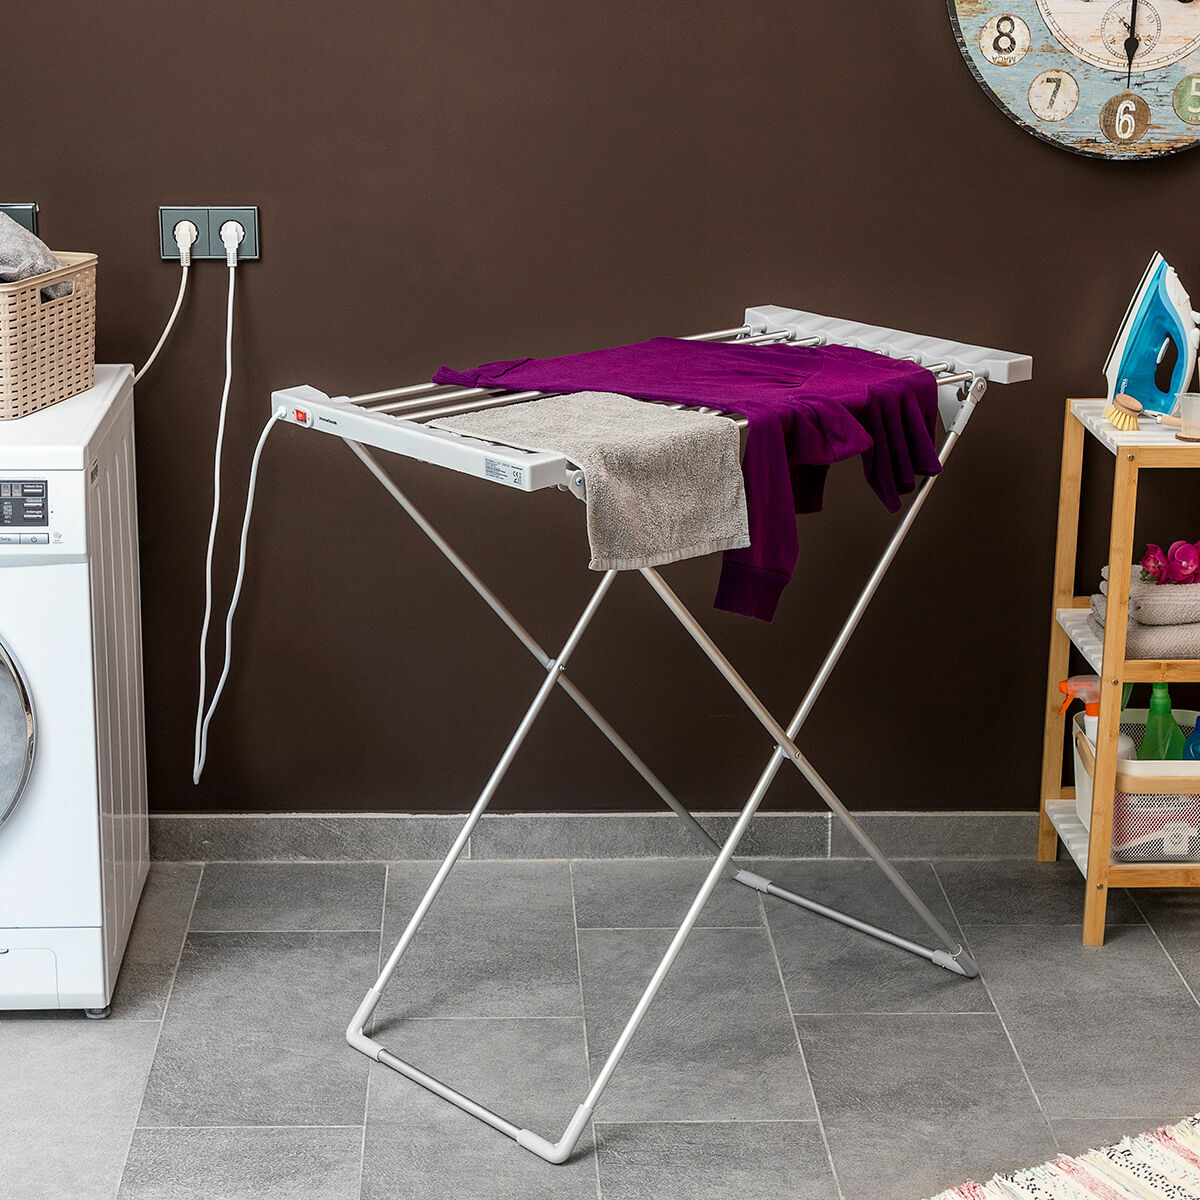 Kaufe Klappbarer elektrischer Wäscheständer Dryak InnovaGoods 8 Stäbe 120 W bei AWK Flagship um € 82.00